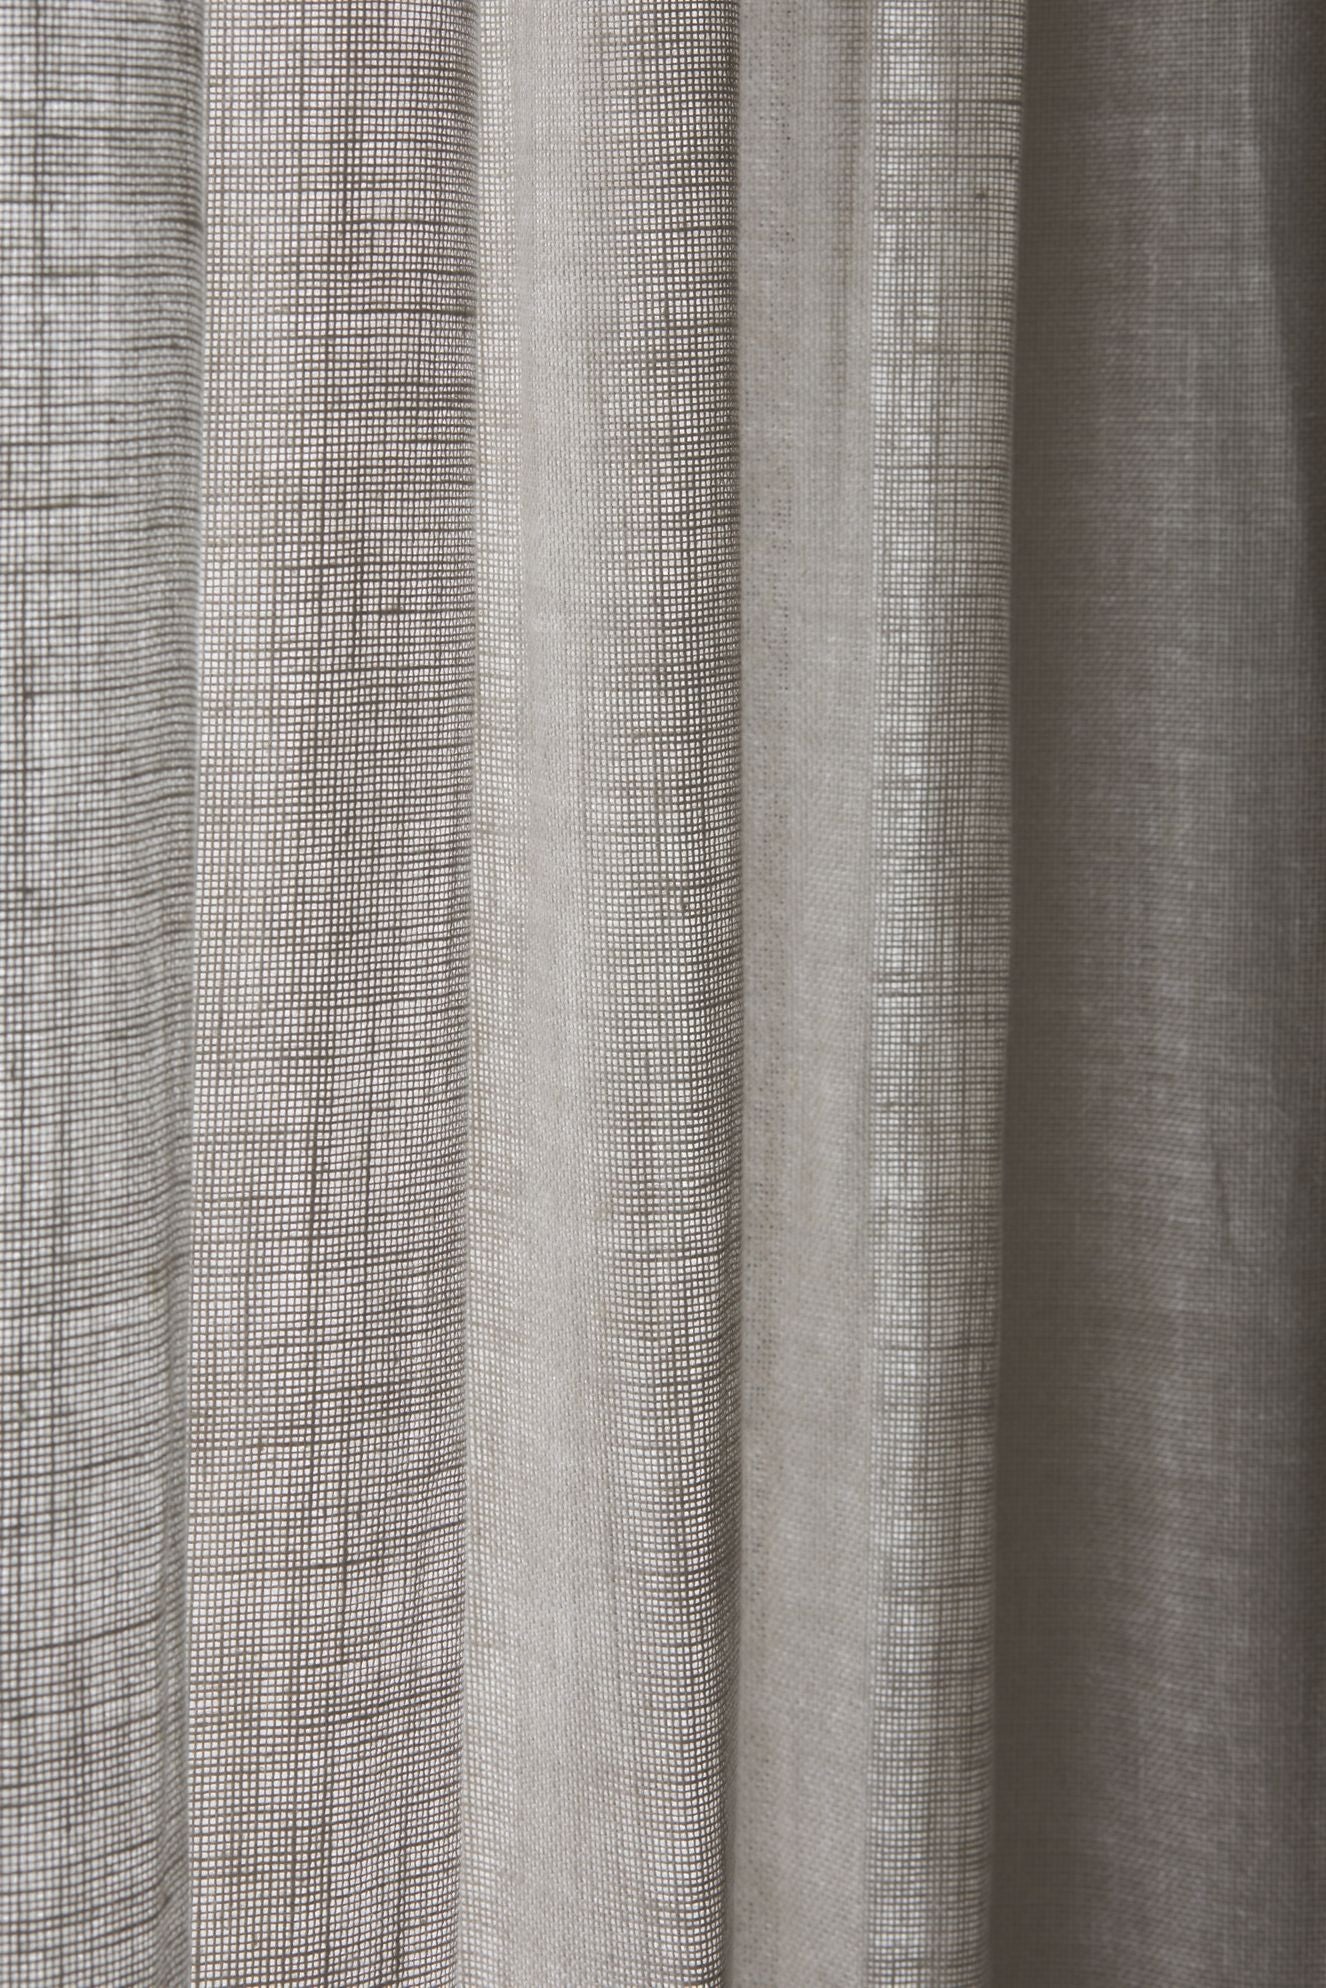 Boracay plain linen fabric